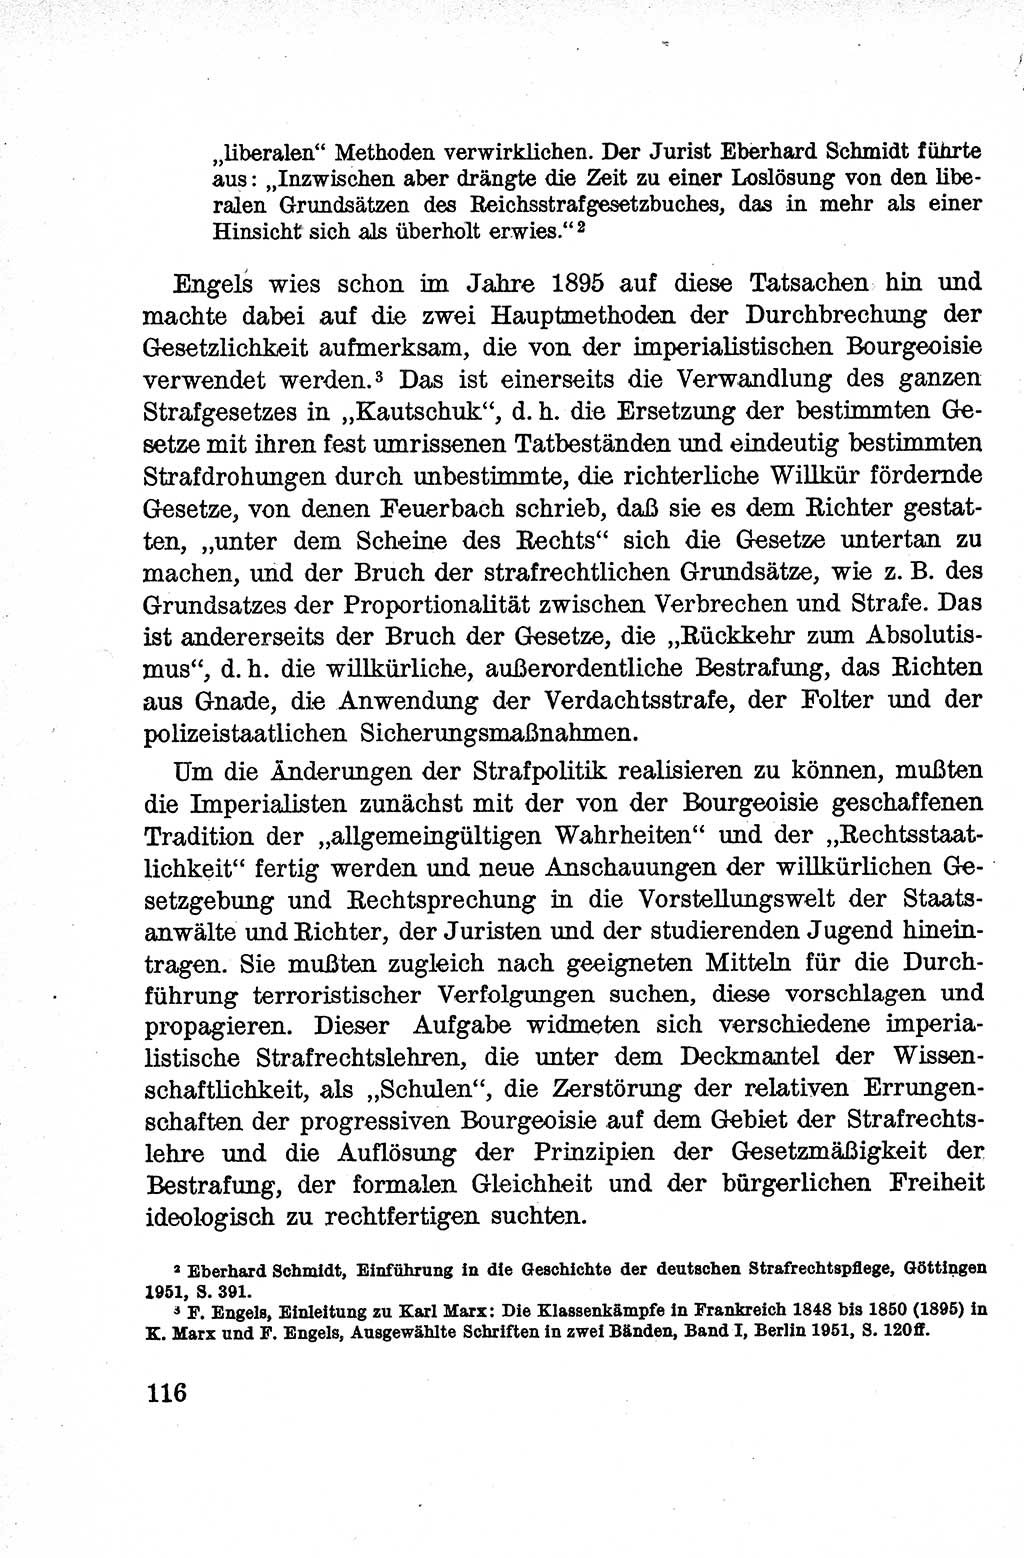 Lehrbuch des Strafrechts der Deutschen Demokratischen Republik (DDR), Allgemeiner Teil 1959, Seite 116 (Lb. Strafr. DDR AT 1959, S. 116)